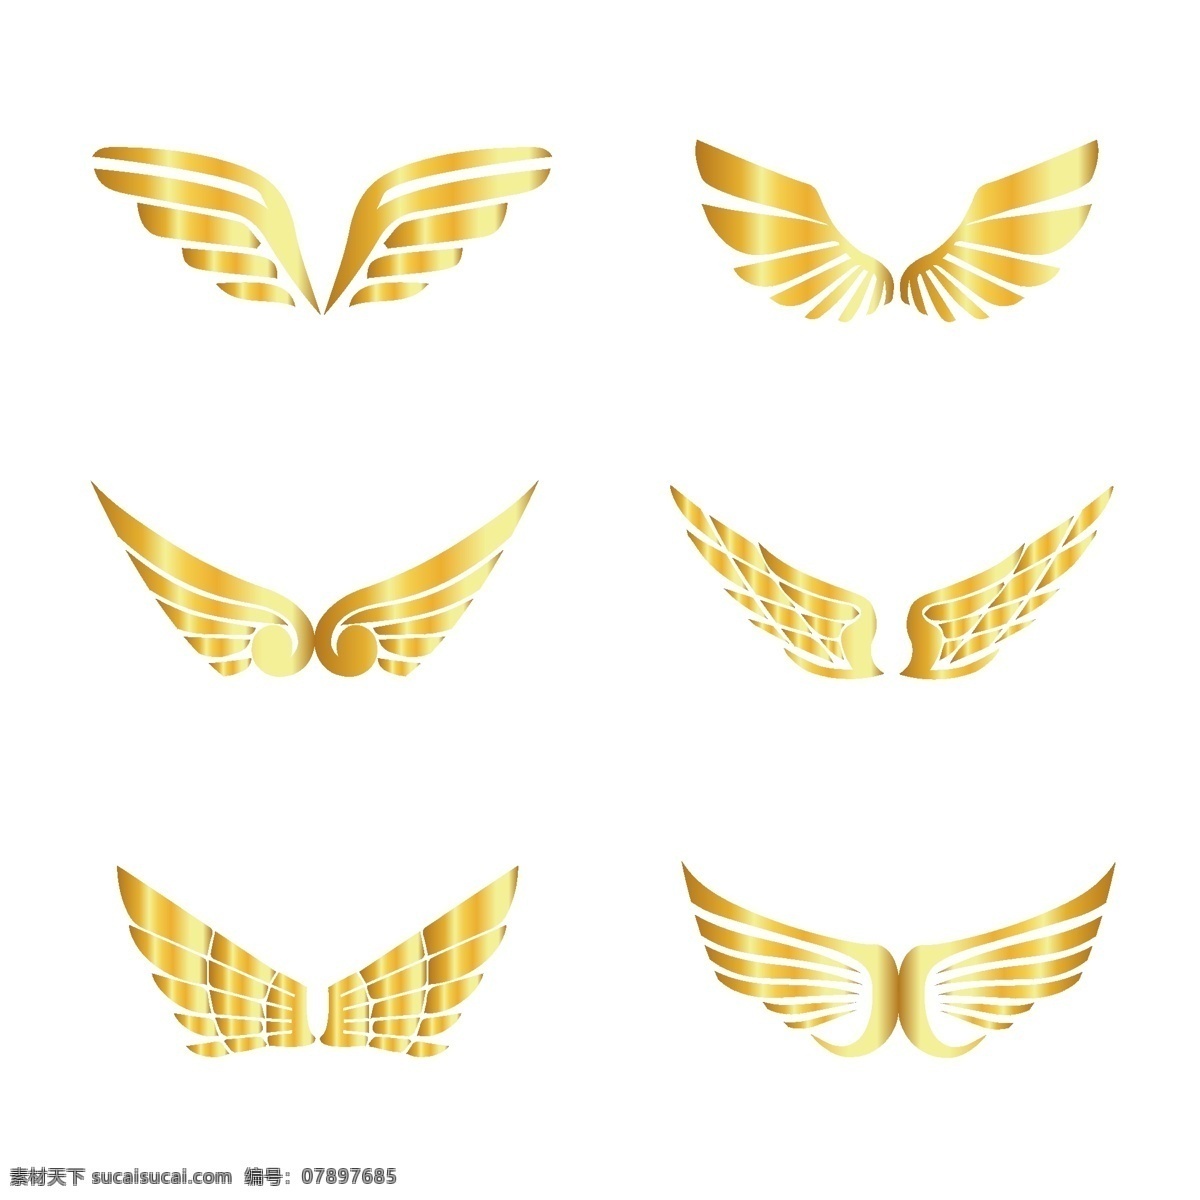 翅膀元素 翅膀 翅膀素材 金色翅膀 金色元素 金色素材 金属元素 金属素材 金属装饰 飞翔 飞翔元素 飞翔素材 飞翔装饰 卡通飞翔 卡通翅膀 卡通元素 卡通素材 元素设计 分层